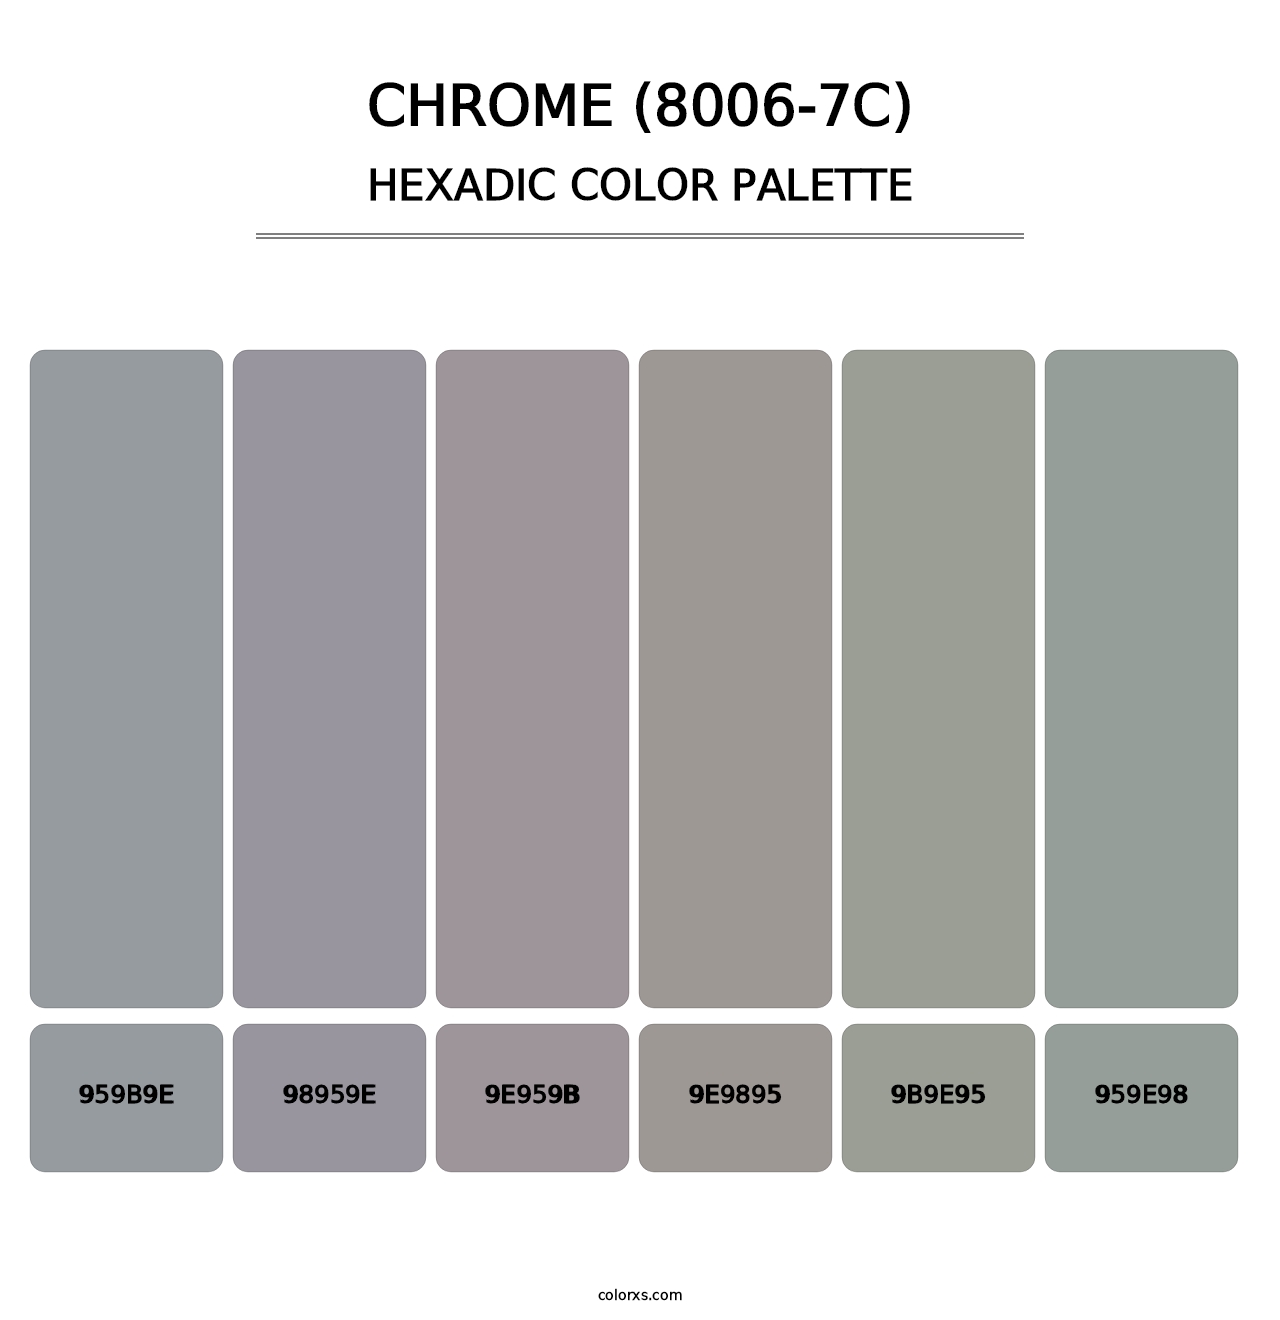 Chrome (8006-7C) - Hexadic Color Palette